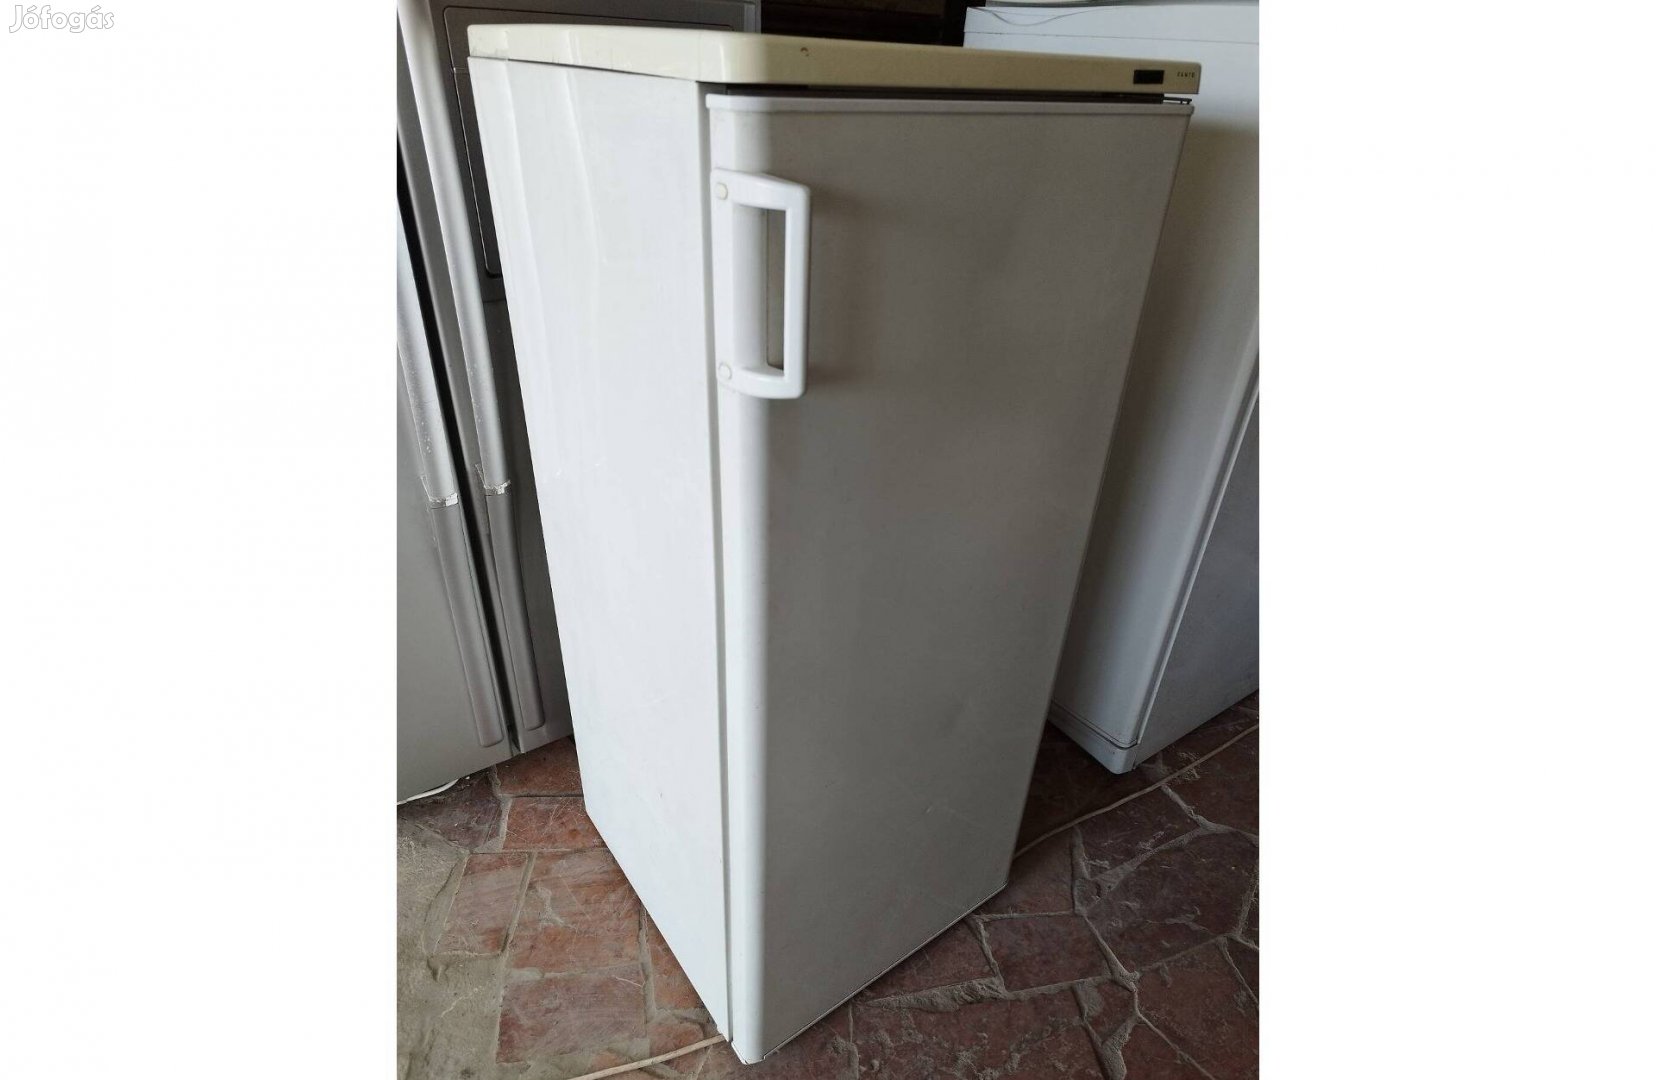 AEG 240 literes kombinált hűtőszekrény garanciával szállítás